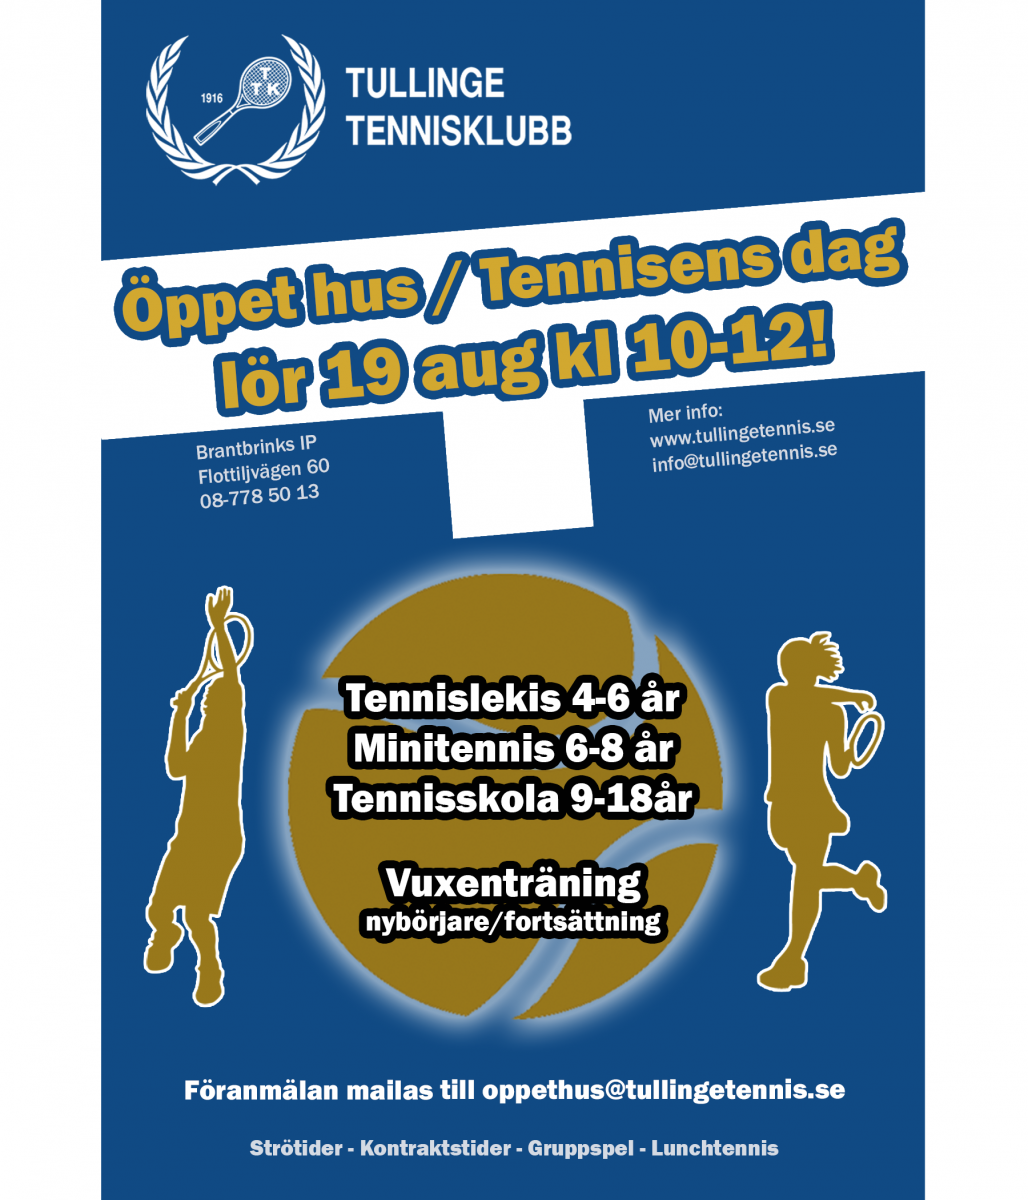 image: Öppet hus / Tennisens dag lör 19 aug kl 10-12!